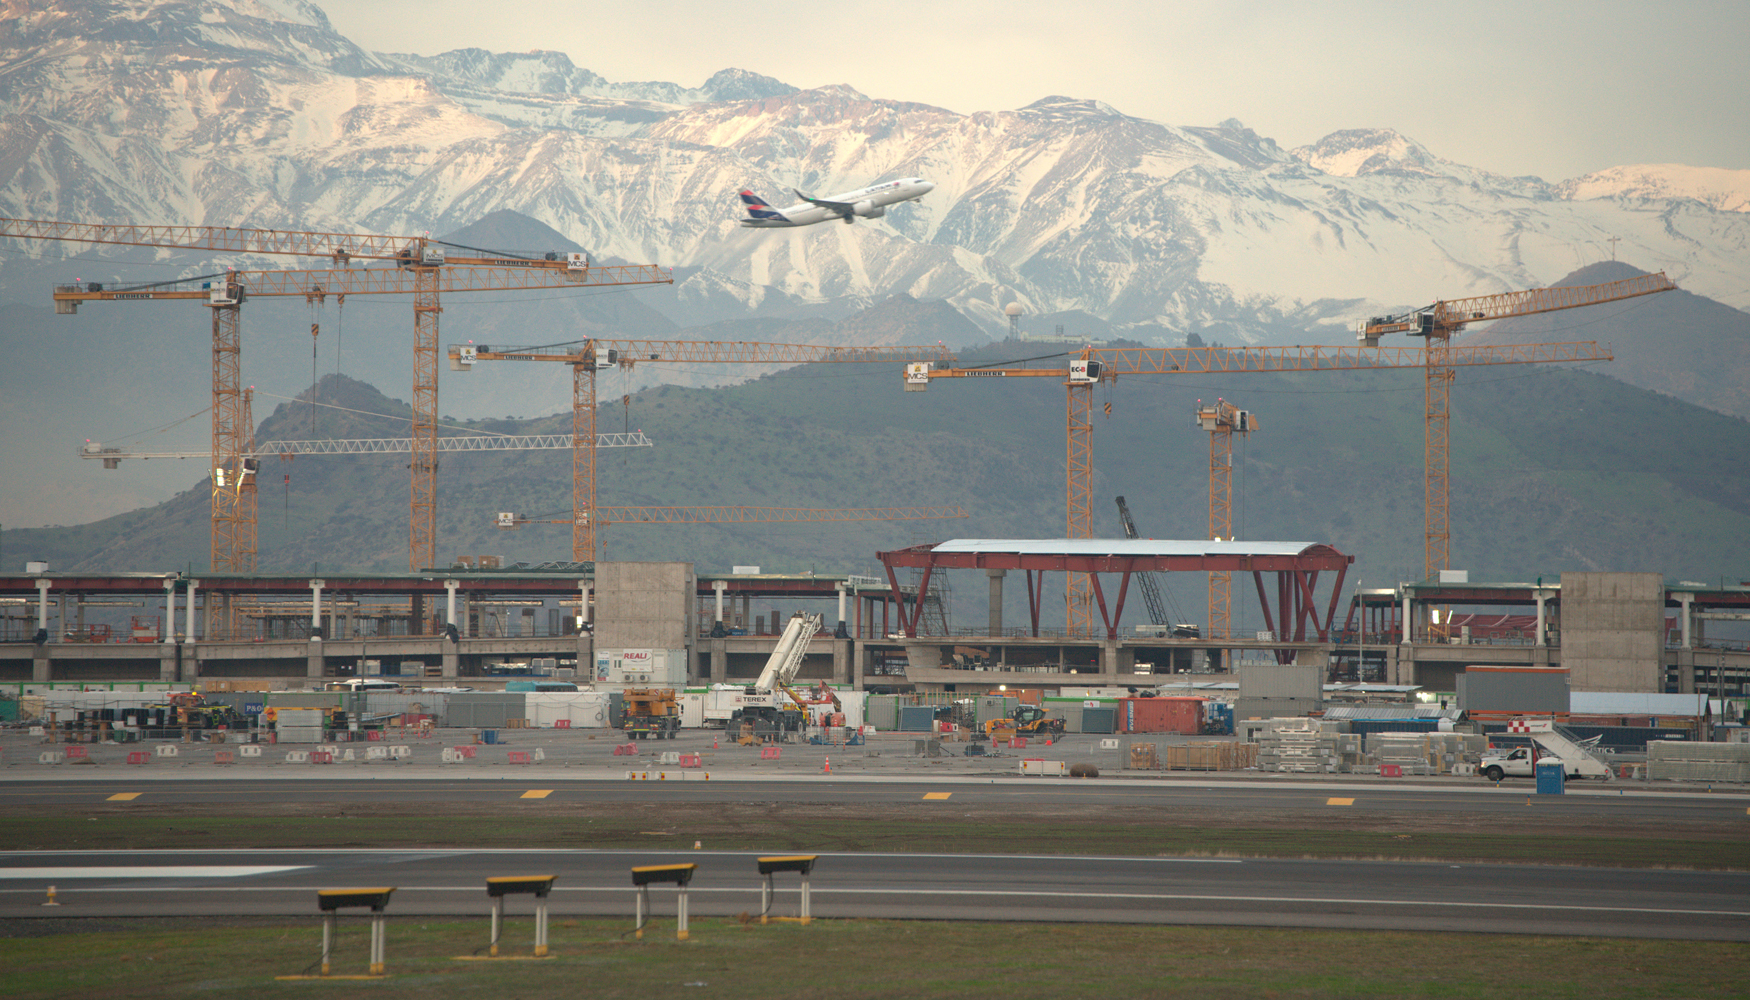 En total, se estn utilizando 23 gras torre de Liebherr para la construccin del aeropuerto de Santiago de Chile